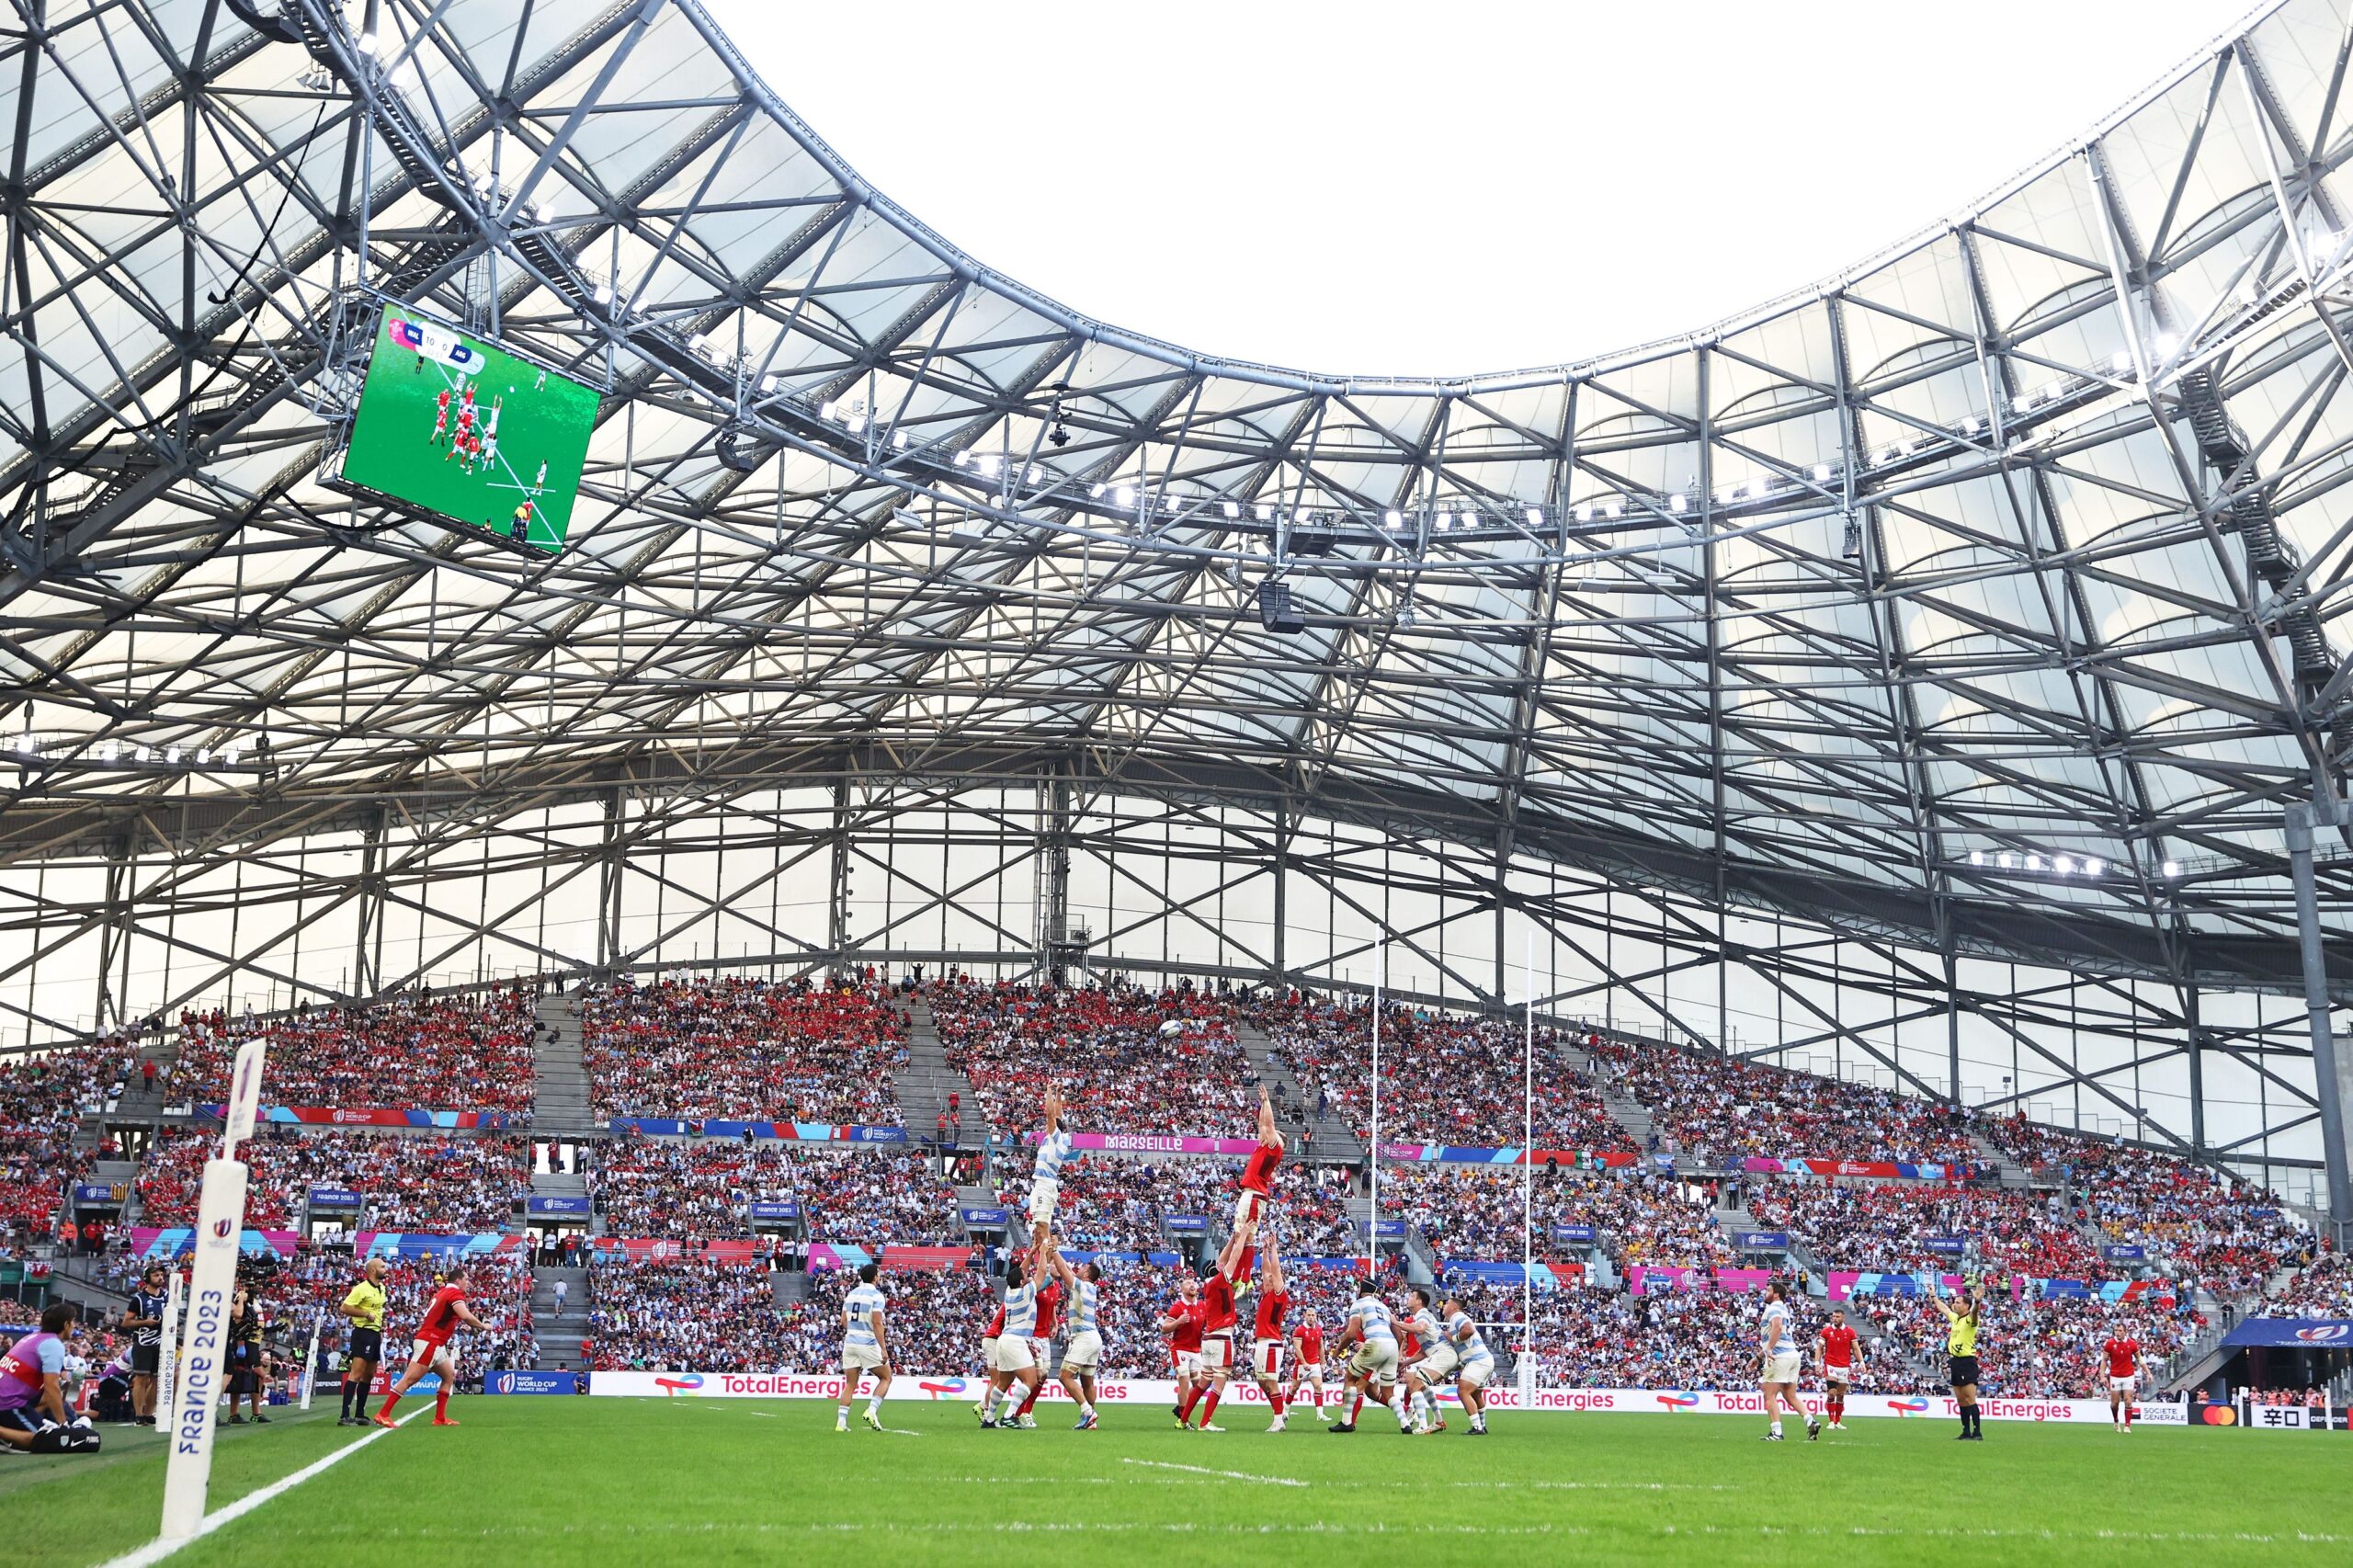 ДЕТАЉ СА МЕЧА НА ВЕЛЕДРОМУ: Велшани и Аргентинци у ваздушном дуелу. ФОТО: World Rugby/Getty Images